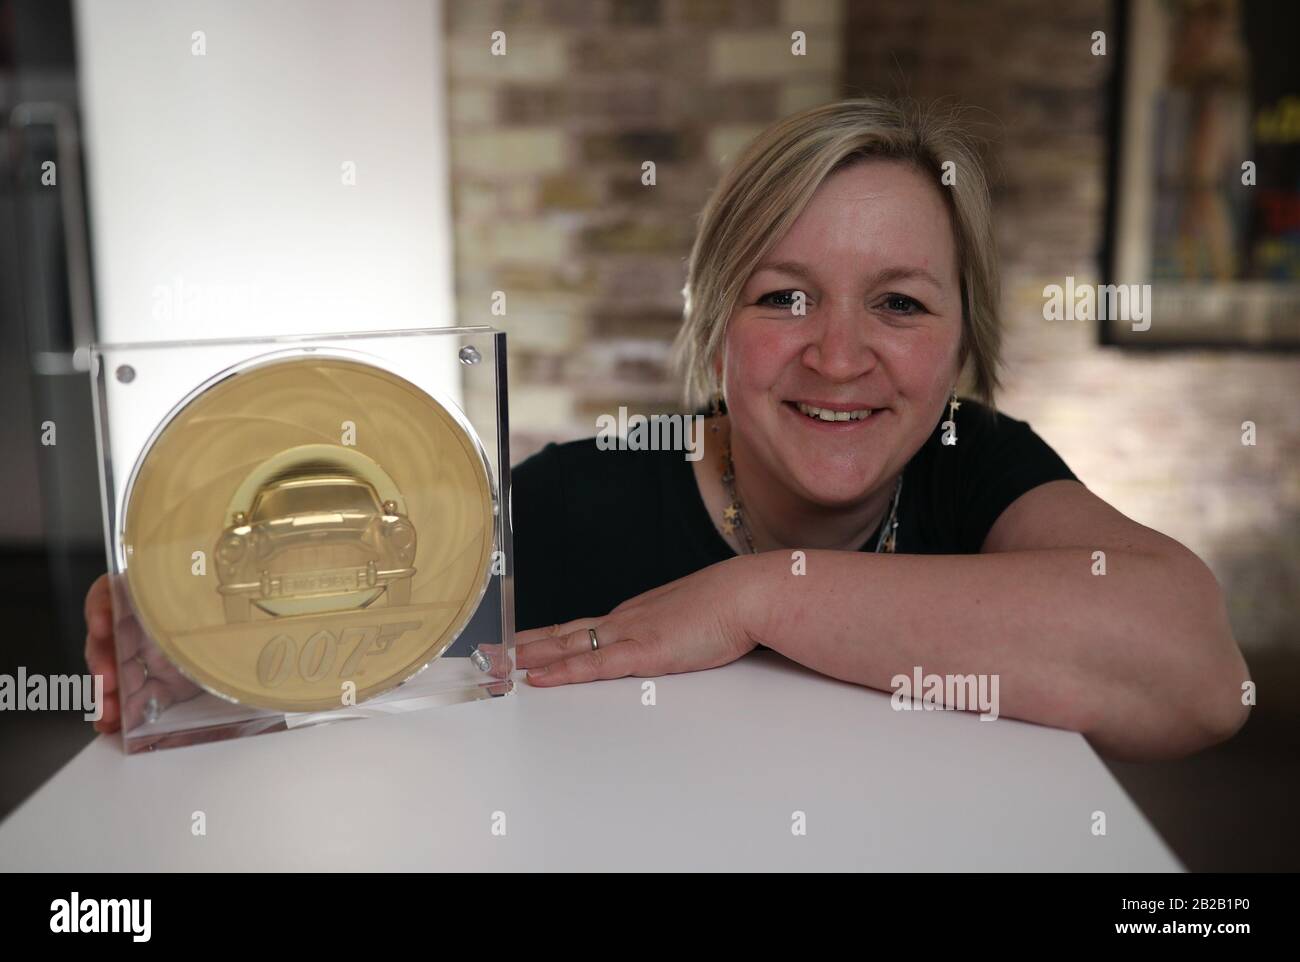 Neuübertragung - Hinzufügen eines Nennwerts der Münze. Royal Mint Designerin Laura Clancy, die eine einzigartige 7 Kilo Gold James Bond Münze entworfen hat - die die größte Münze mit dem höchsten Nennwert von 7.000 £ist. Produziert in der 1.100-jährigen Geschichte des Mint - während der Einführung einer neuen James Bond Coin- und Goldbar-Sammlung vor der Veröffentlichung des 25. James-Bond-Films "No Time To die" in der Ausstellung "Bond in Motion" im London Film Museum. Stockfoto